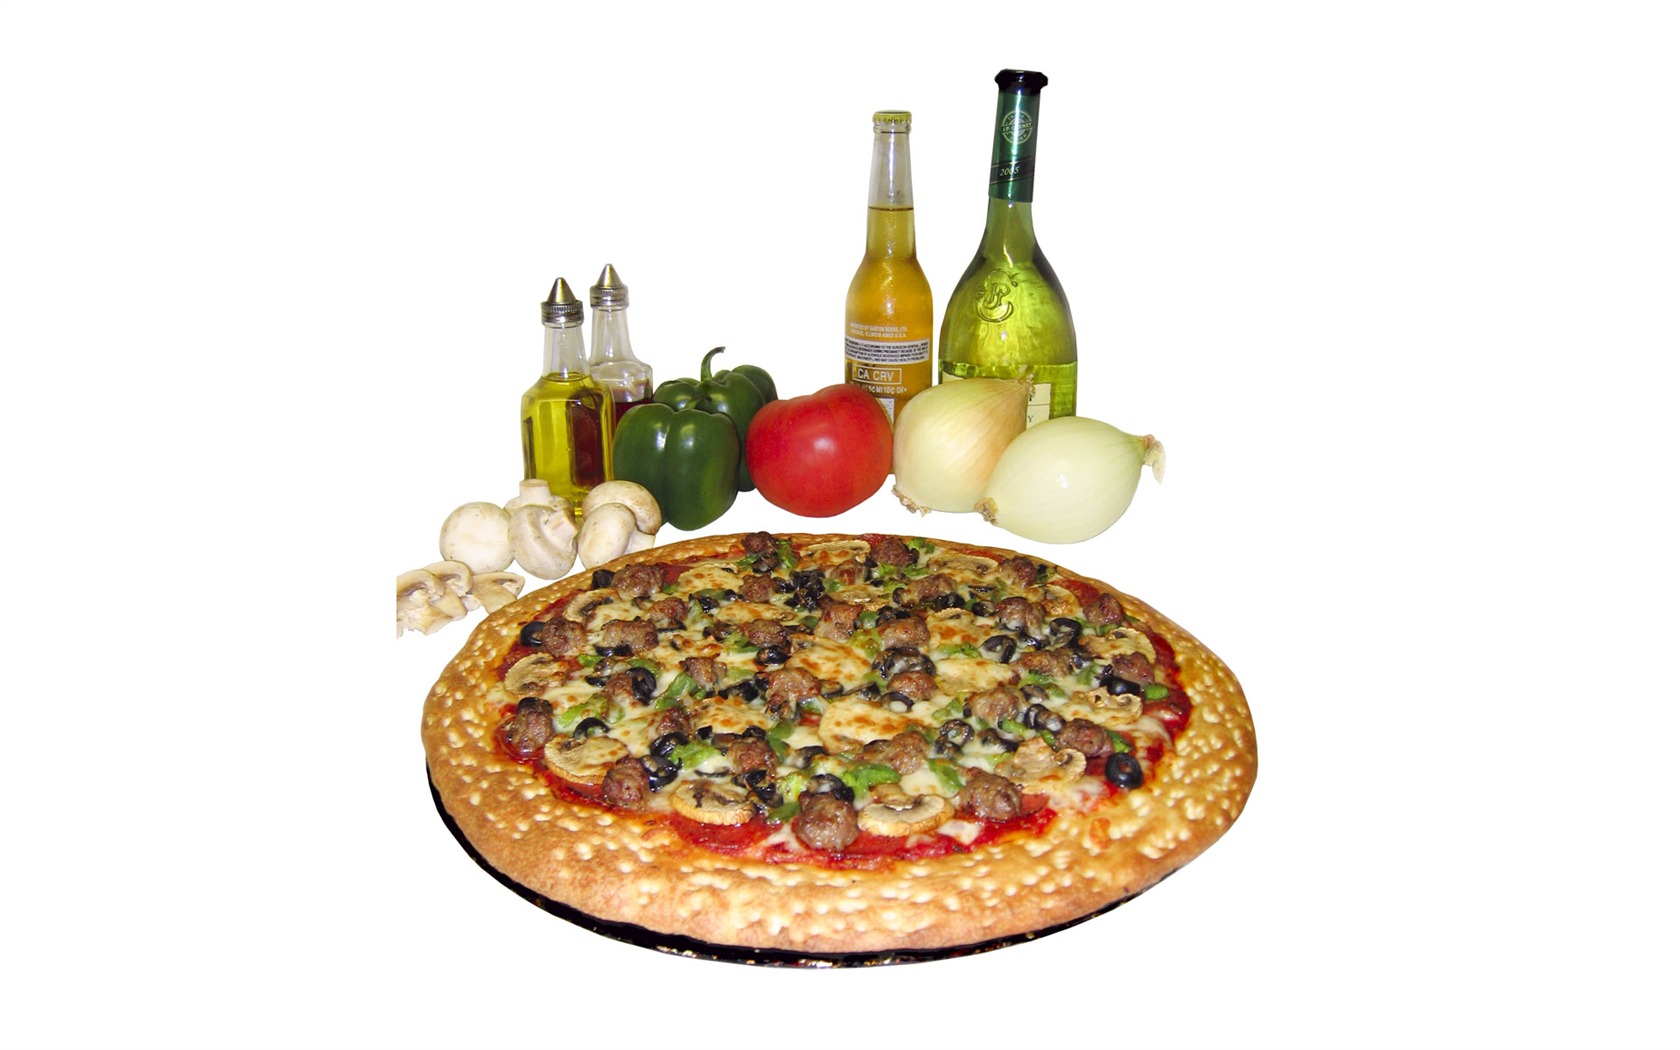 Fondos de pizzerías de Alimentos (3) #11 - 1680x1050